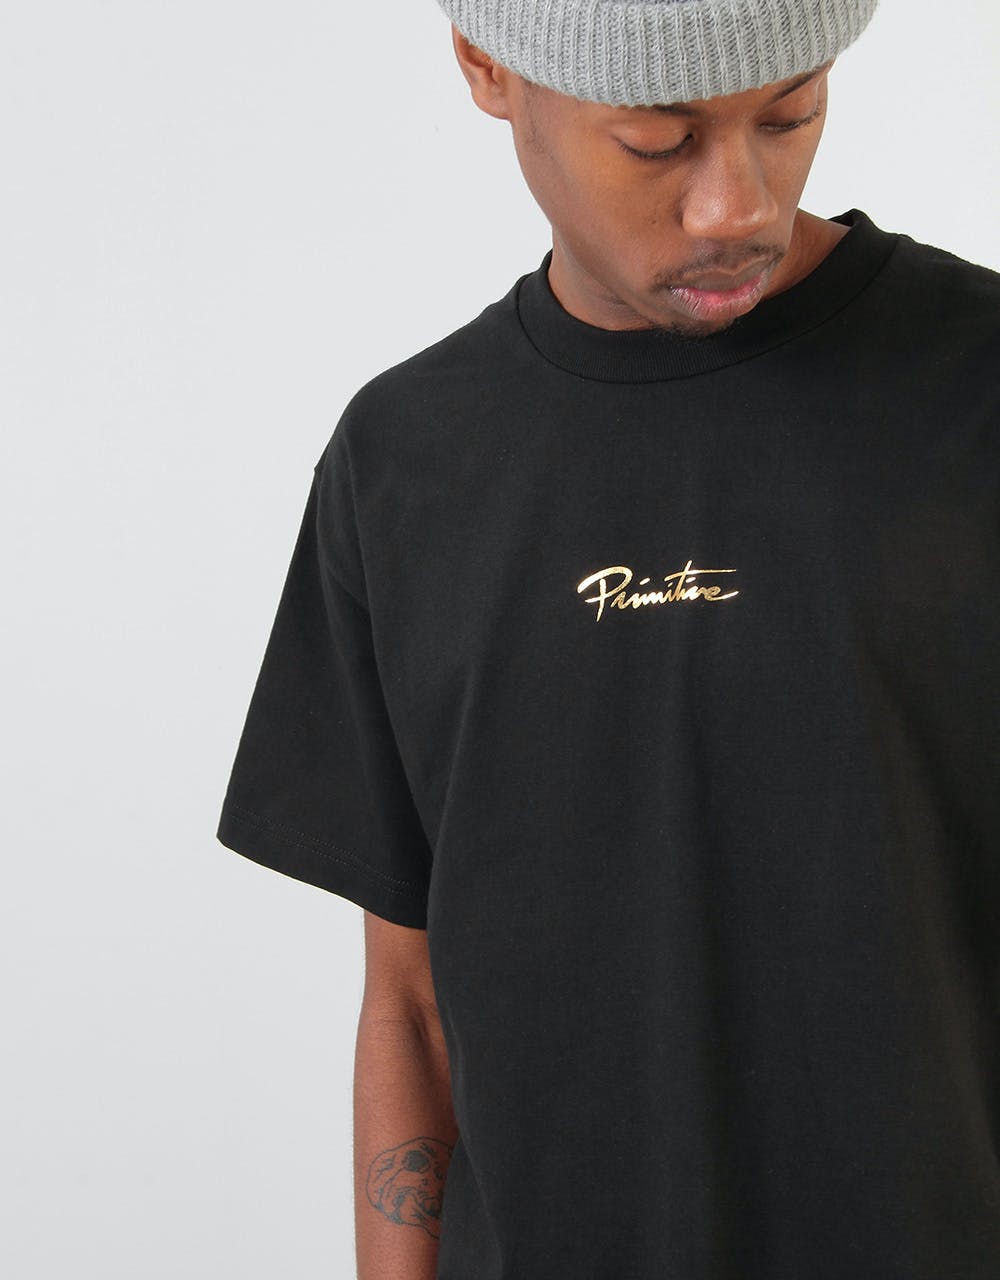 Primitive King T-Shirt - Black